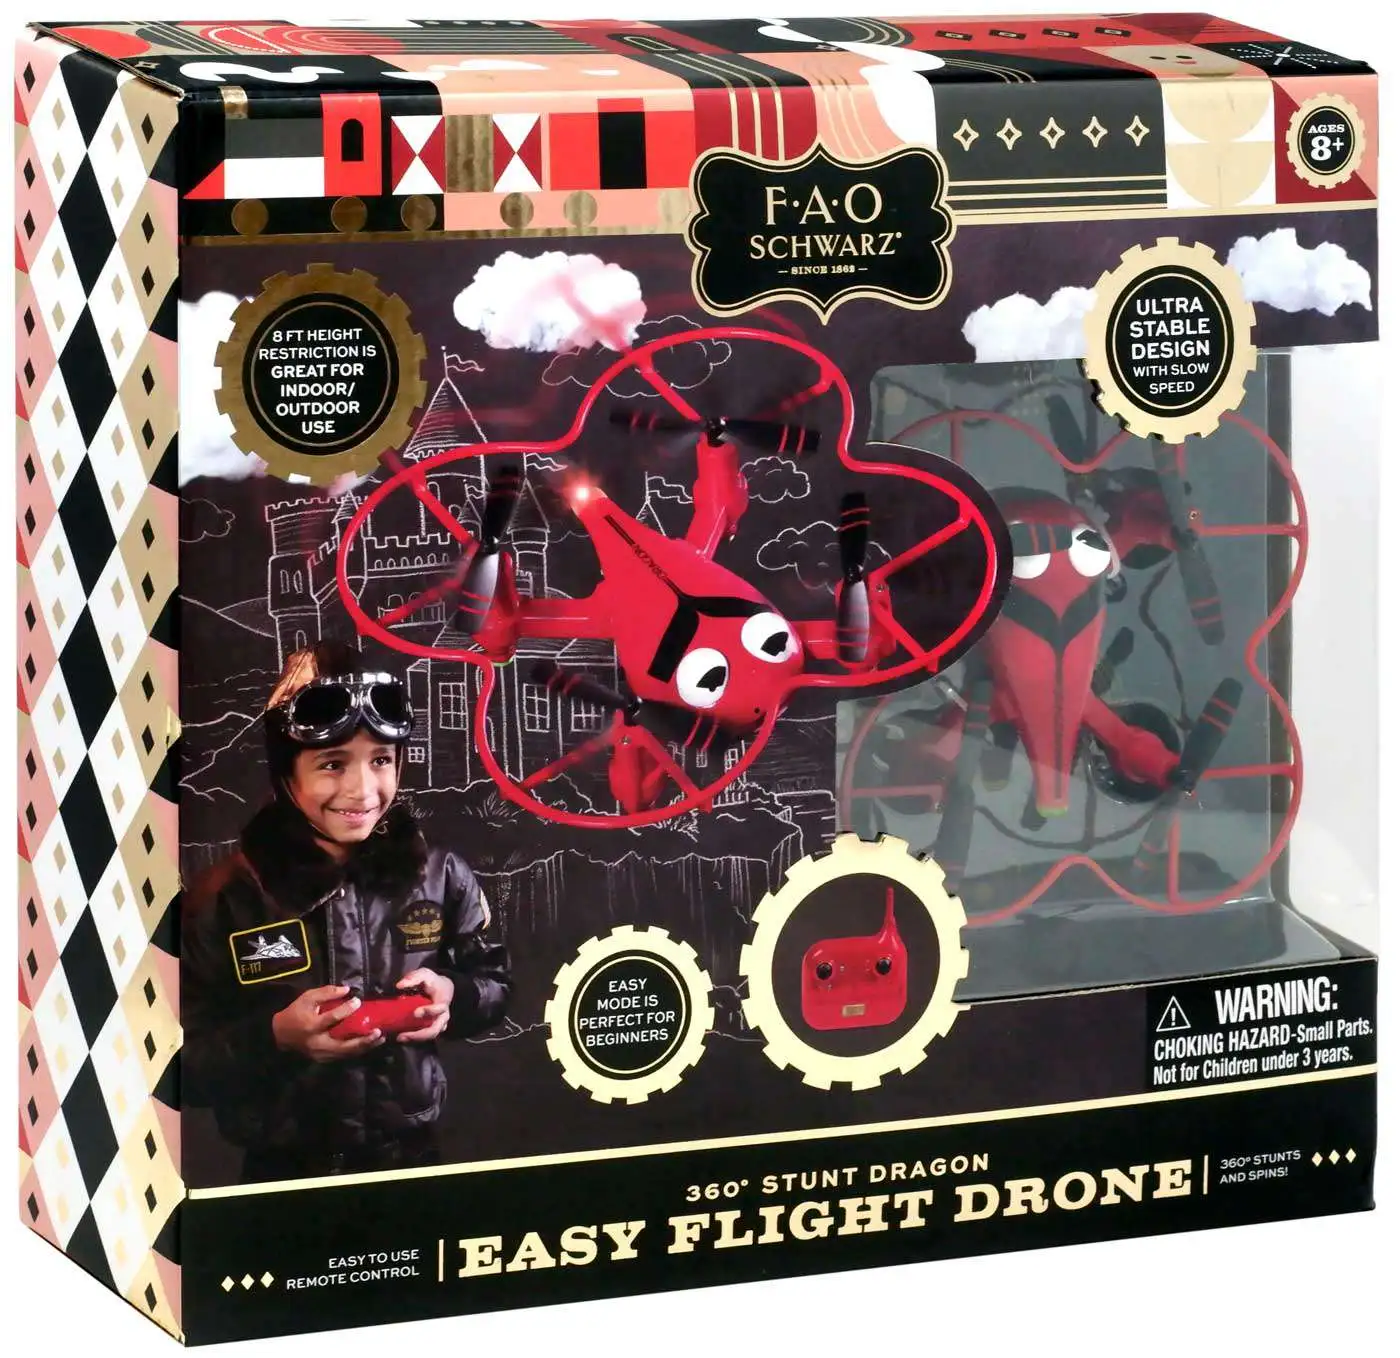 360 Stunt Dragon Easy Flight Drone Indoor Outdoor FAO Schwarz Kids Fun 